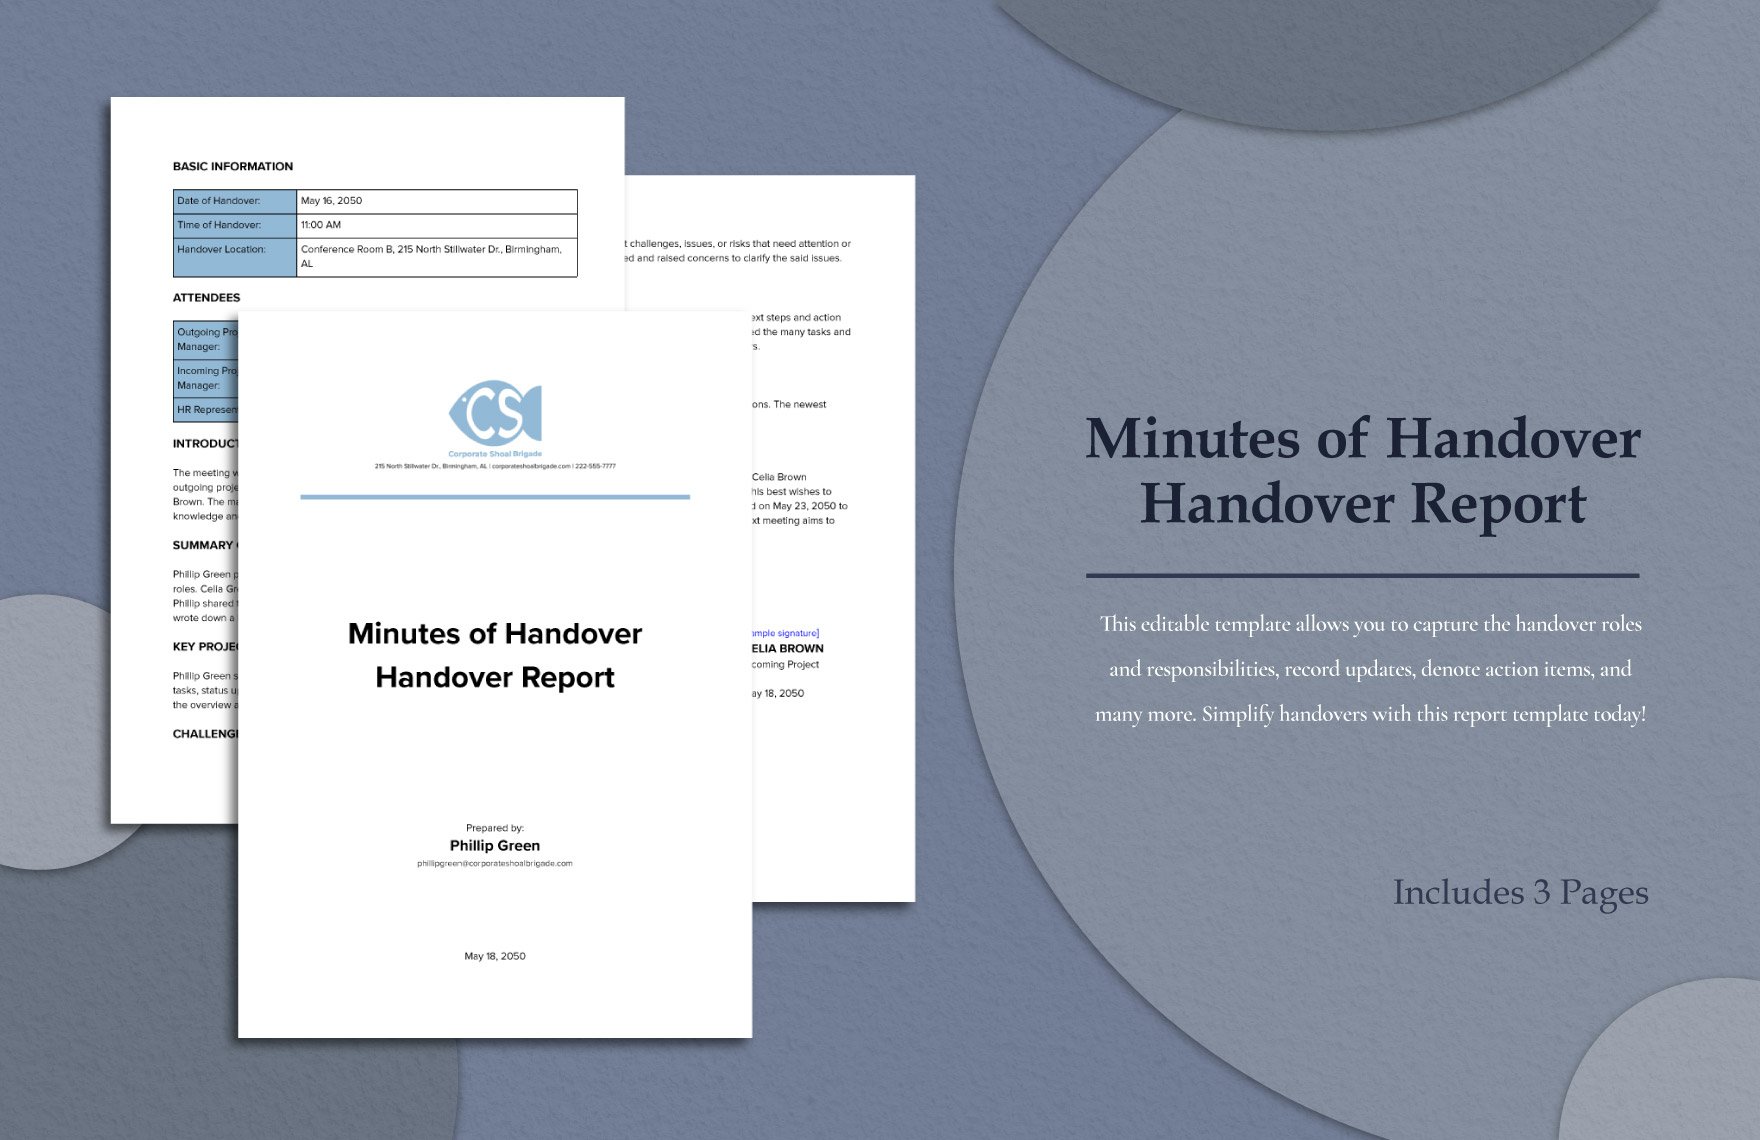 minutes-of-handover-handover-report